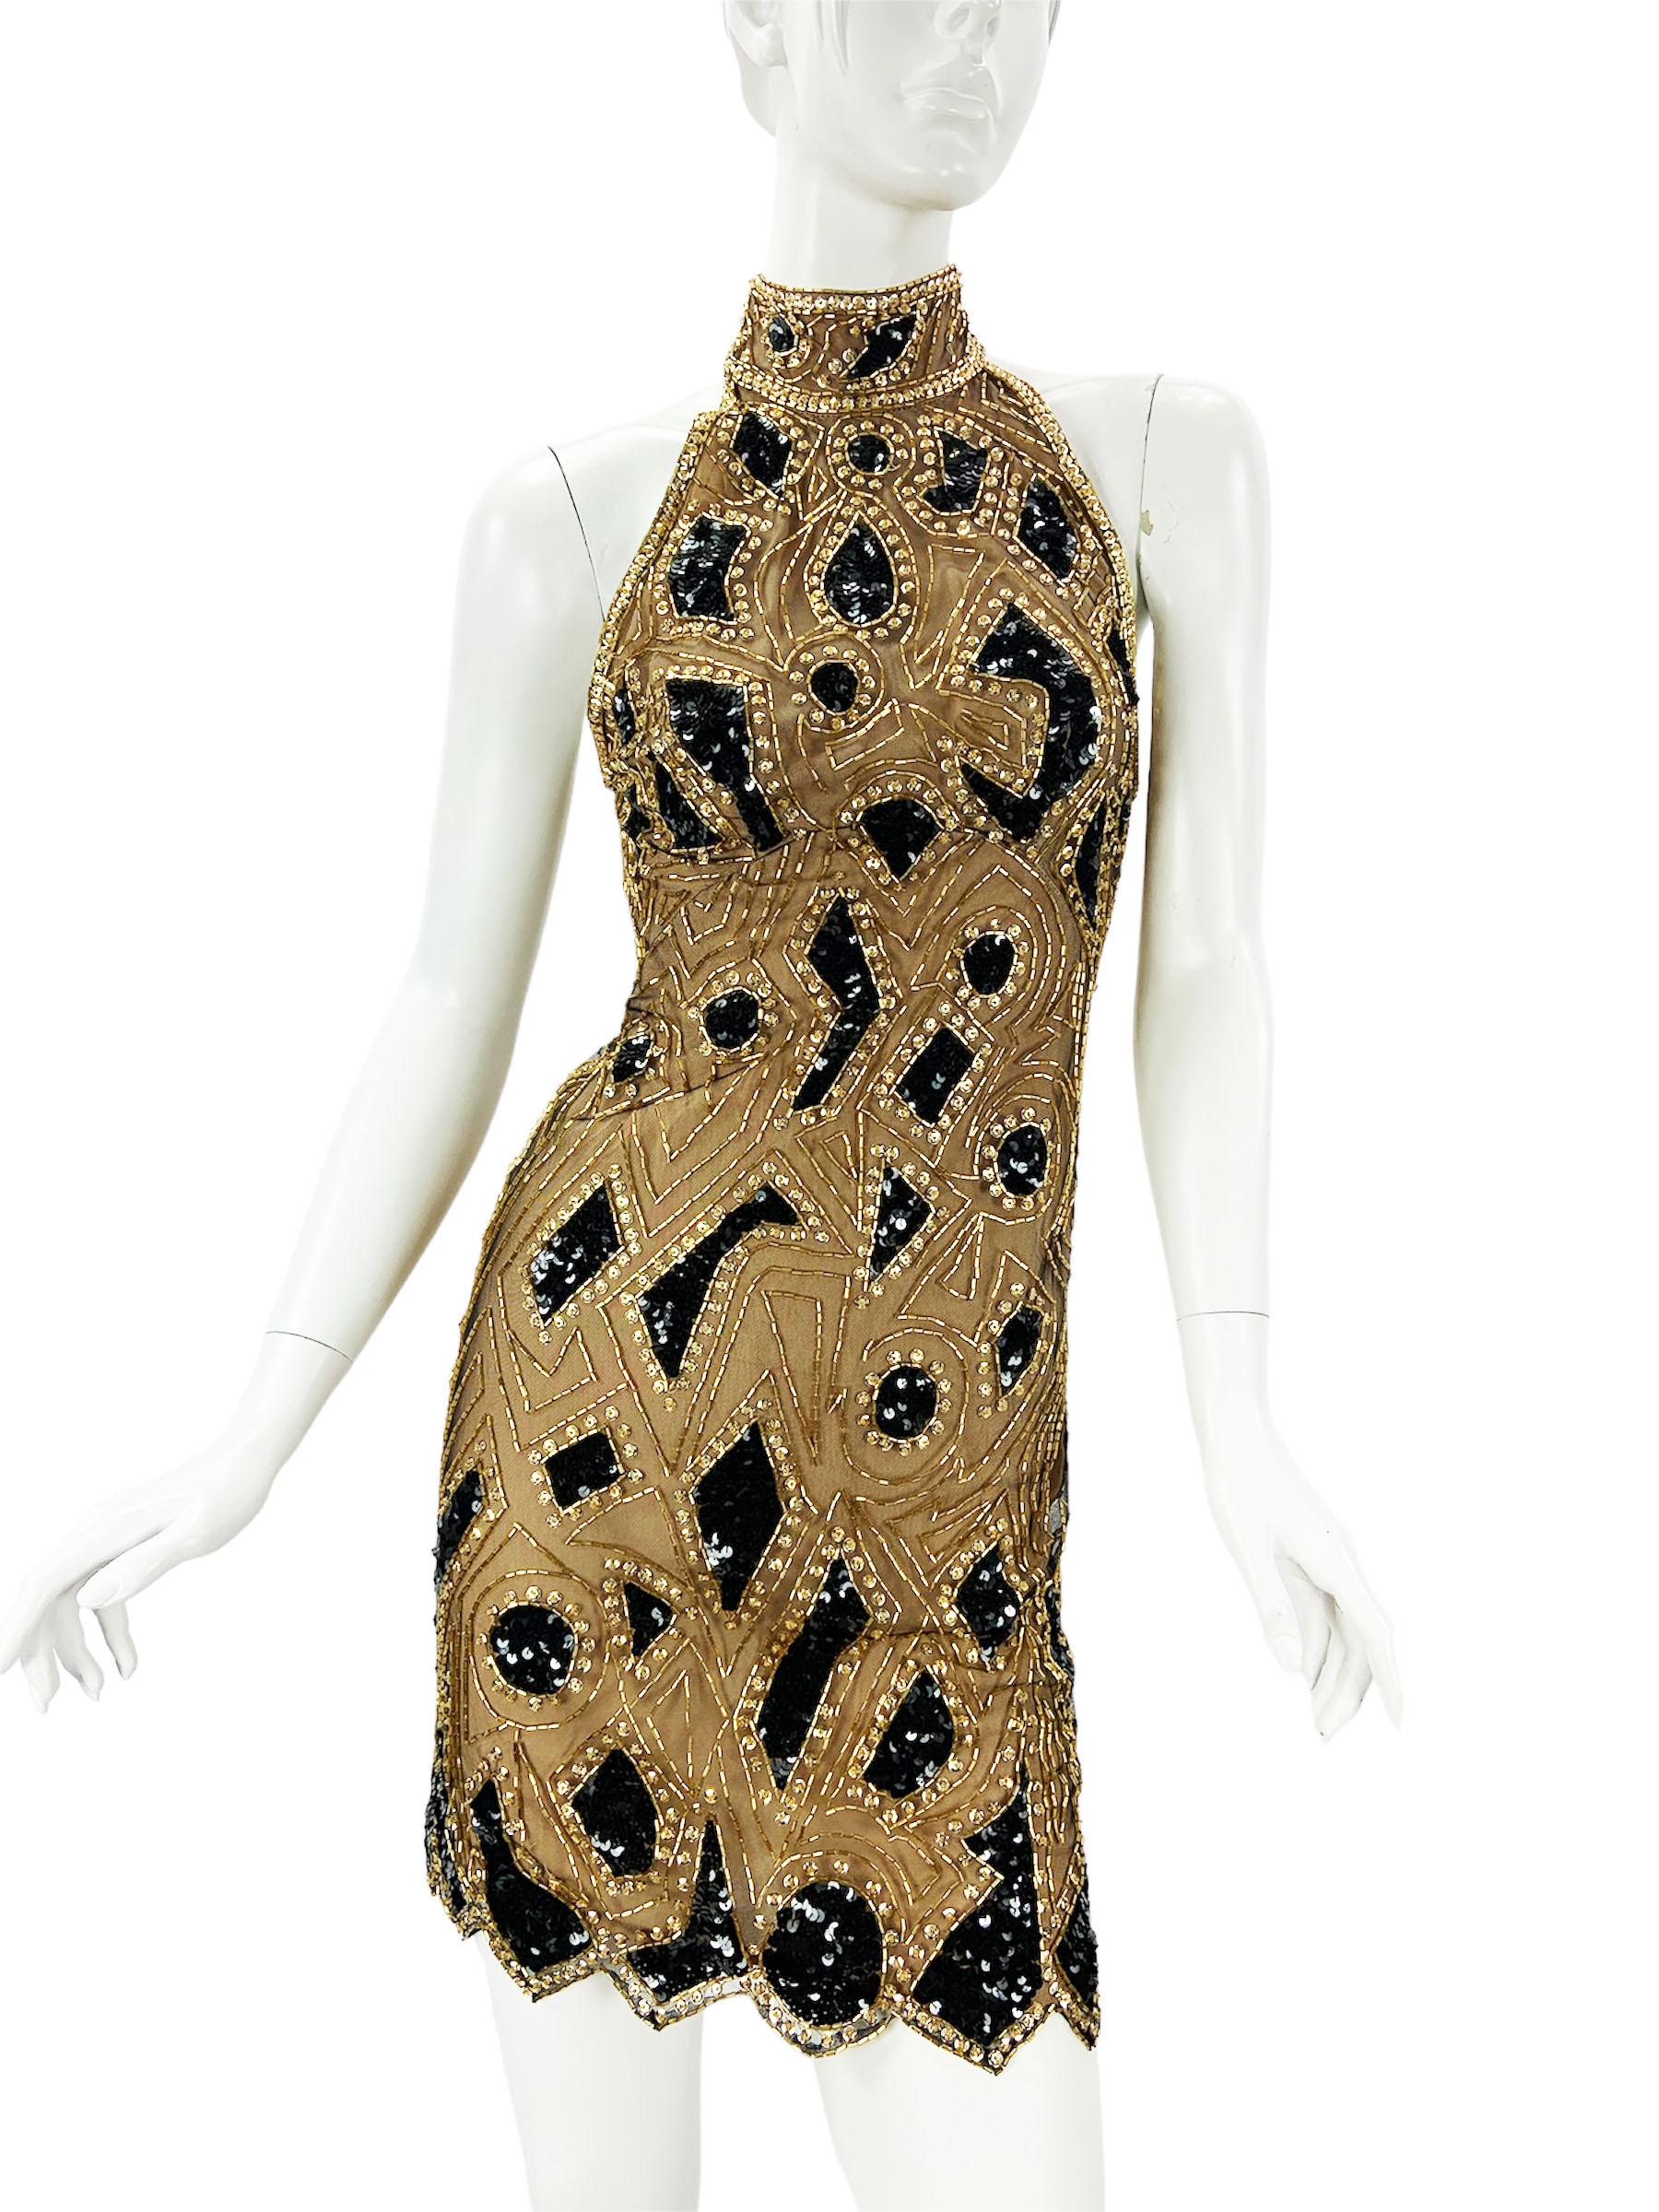 Vintage 80's Bob Mackie Gold Black Embellished Mini Dress
Si vous êtes fan de Fran, sachez qu'elle a porté cette même robe en 1991 dans l'émission 